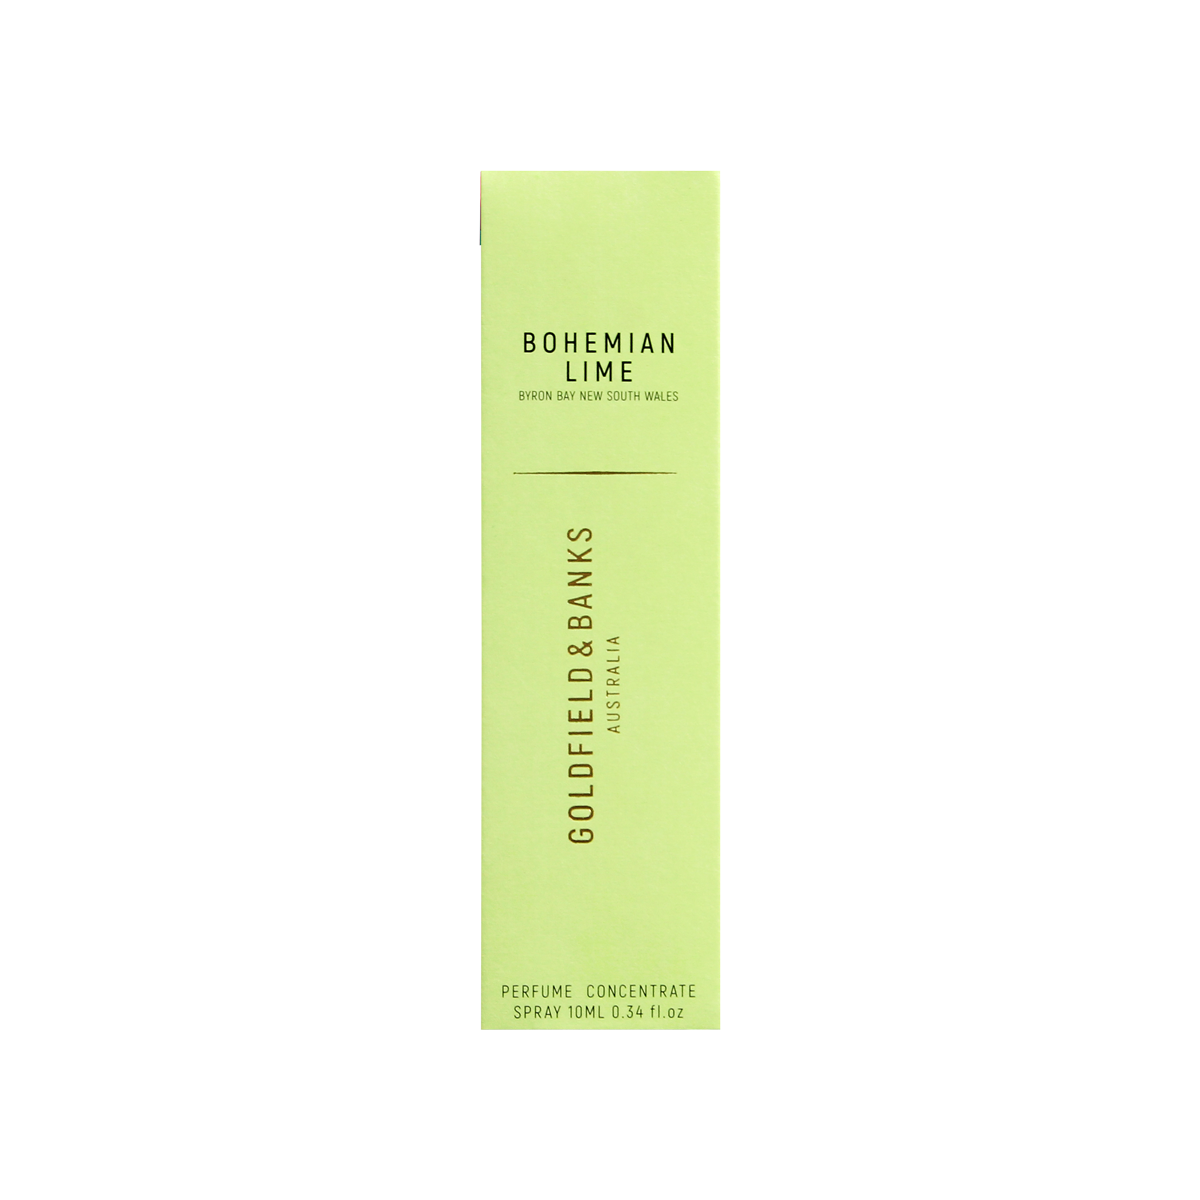 Goldfield & Banks - Bohemian Lime Eau de parfum